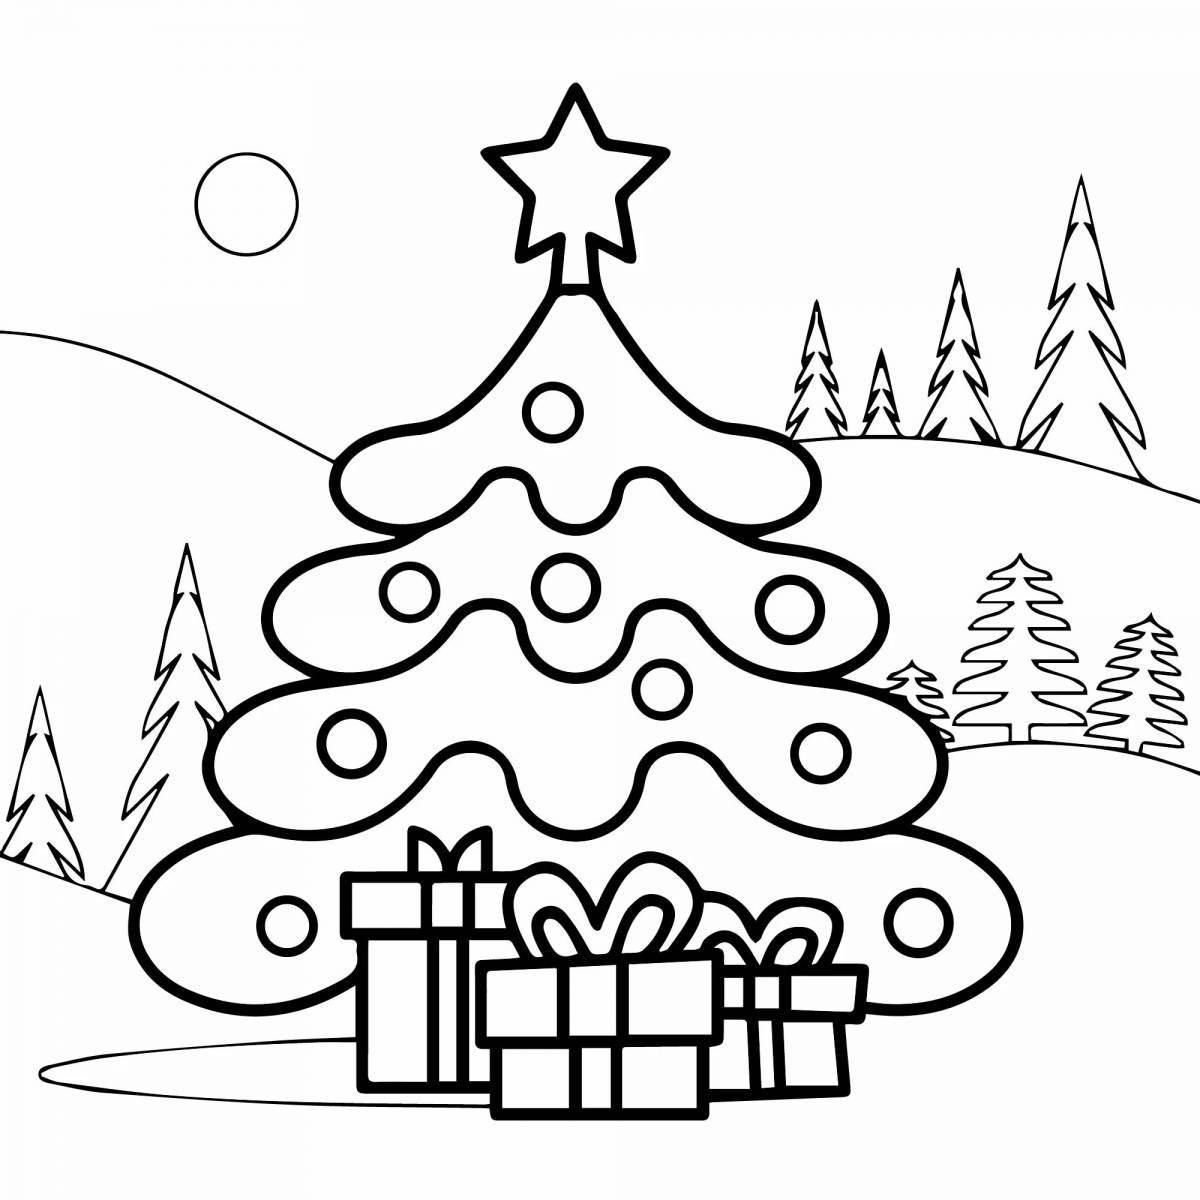 Великолепная раскраска рождественской елки для детей 4-5 лет